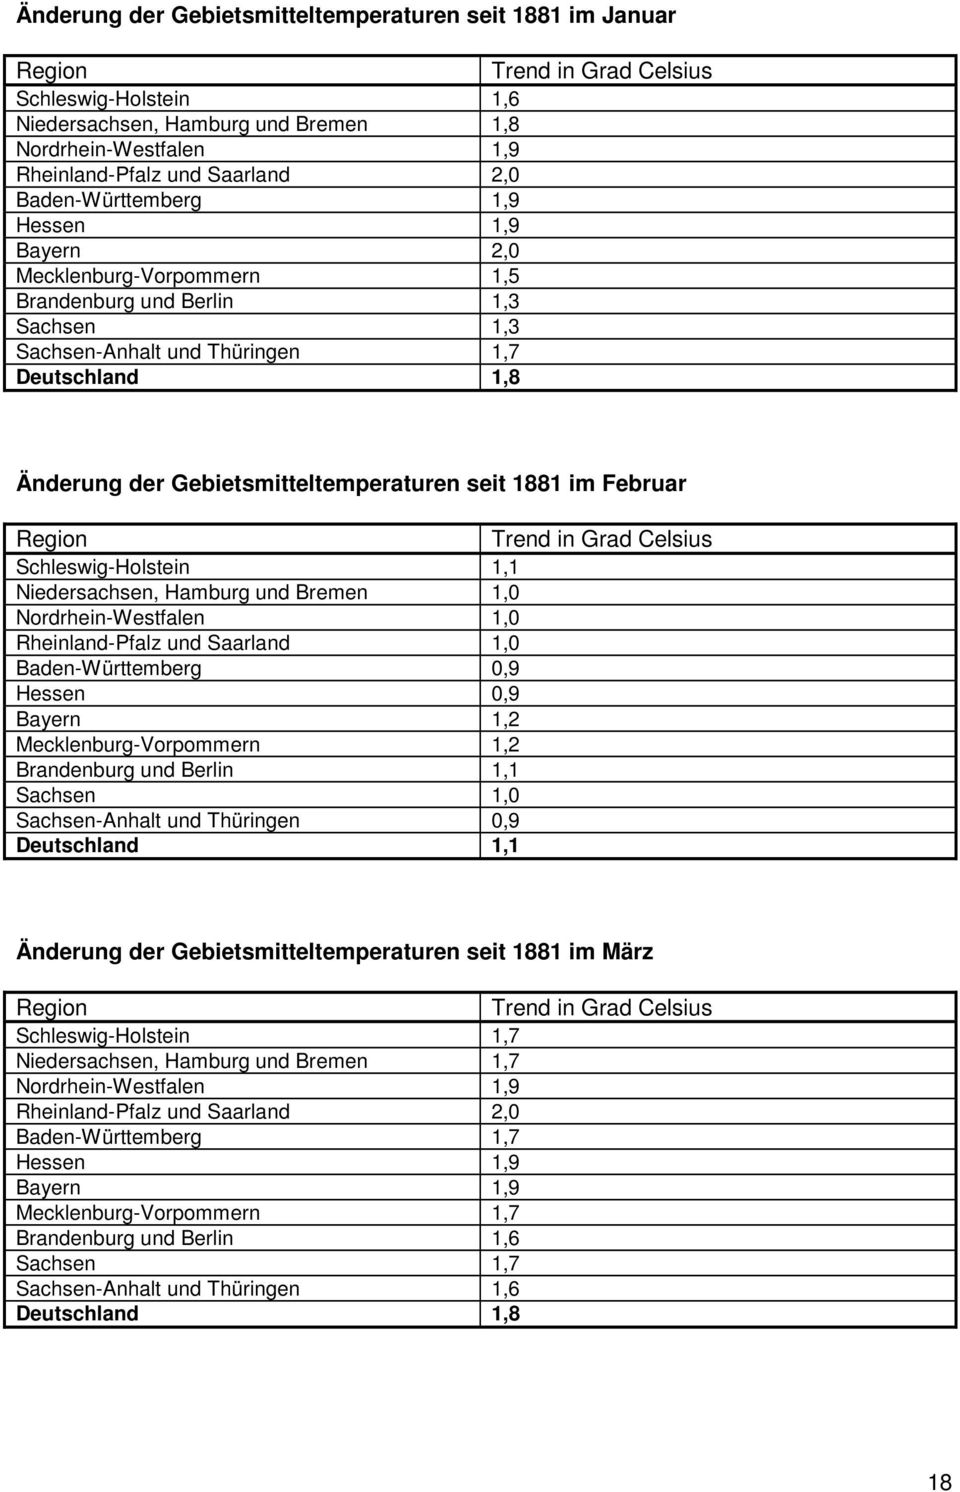 seit 1881 im Februar Trend in Grad Celsius Schleswig-Holstein 1,1 Niedersachsen, Hamburg und Bremen 1,0 Nordrhein-Westfalen 1,0 Rheinland-Pfalz und Saarland 1,0 Baden-Württemberg 0,9 Hessen 0,9